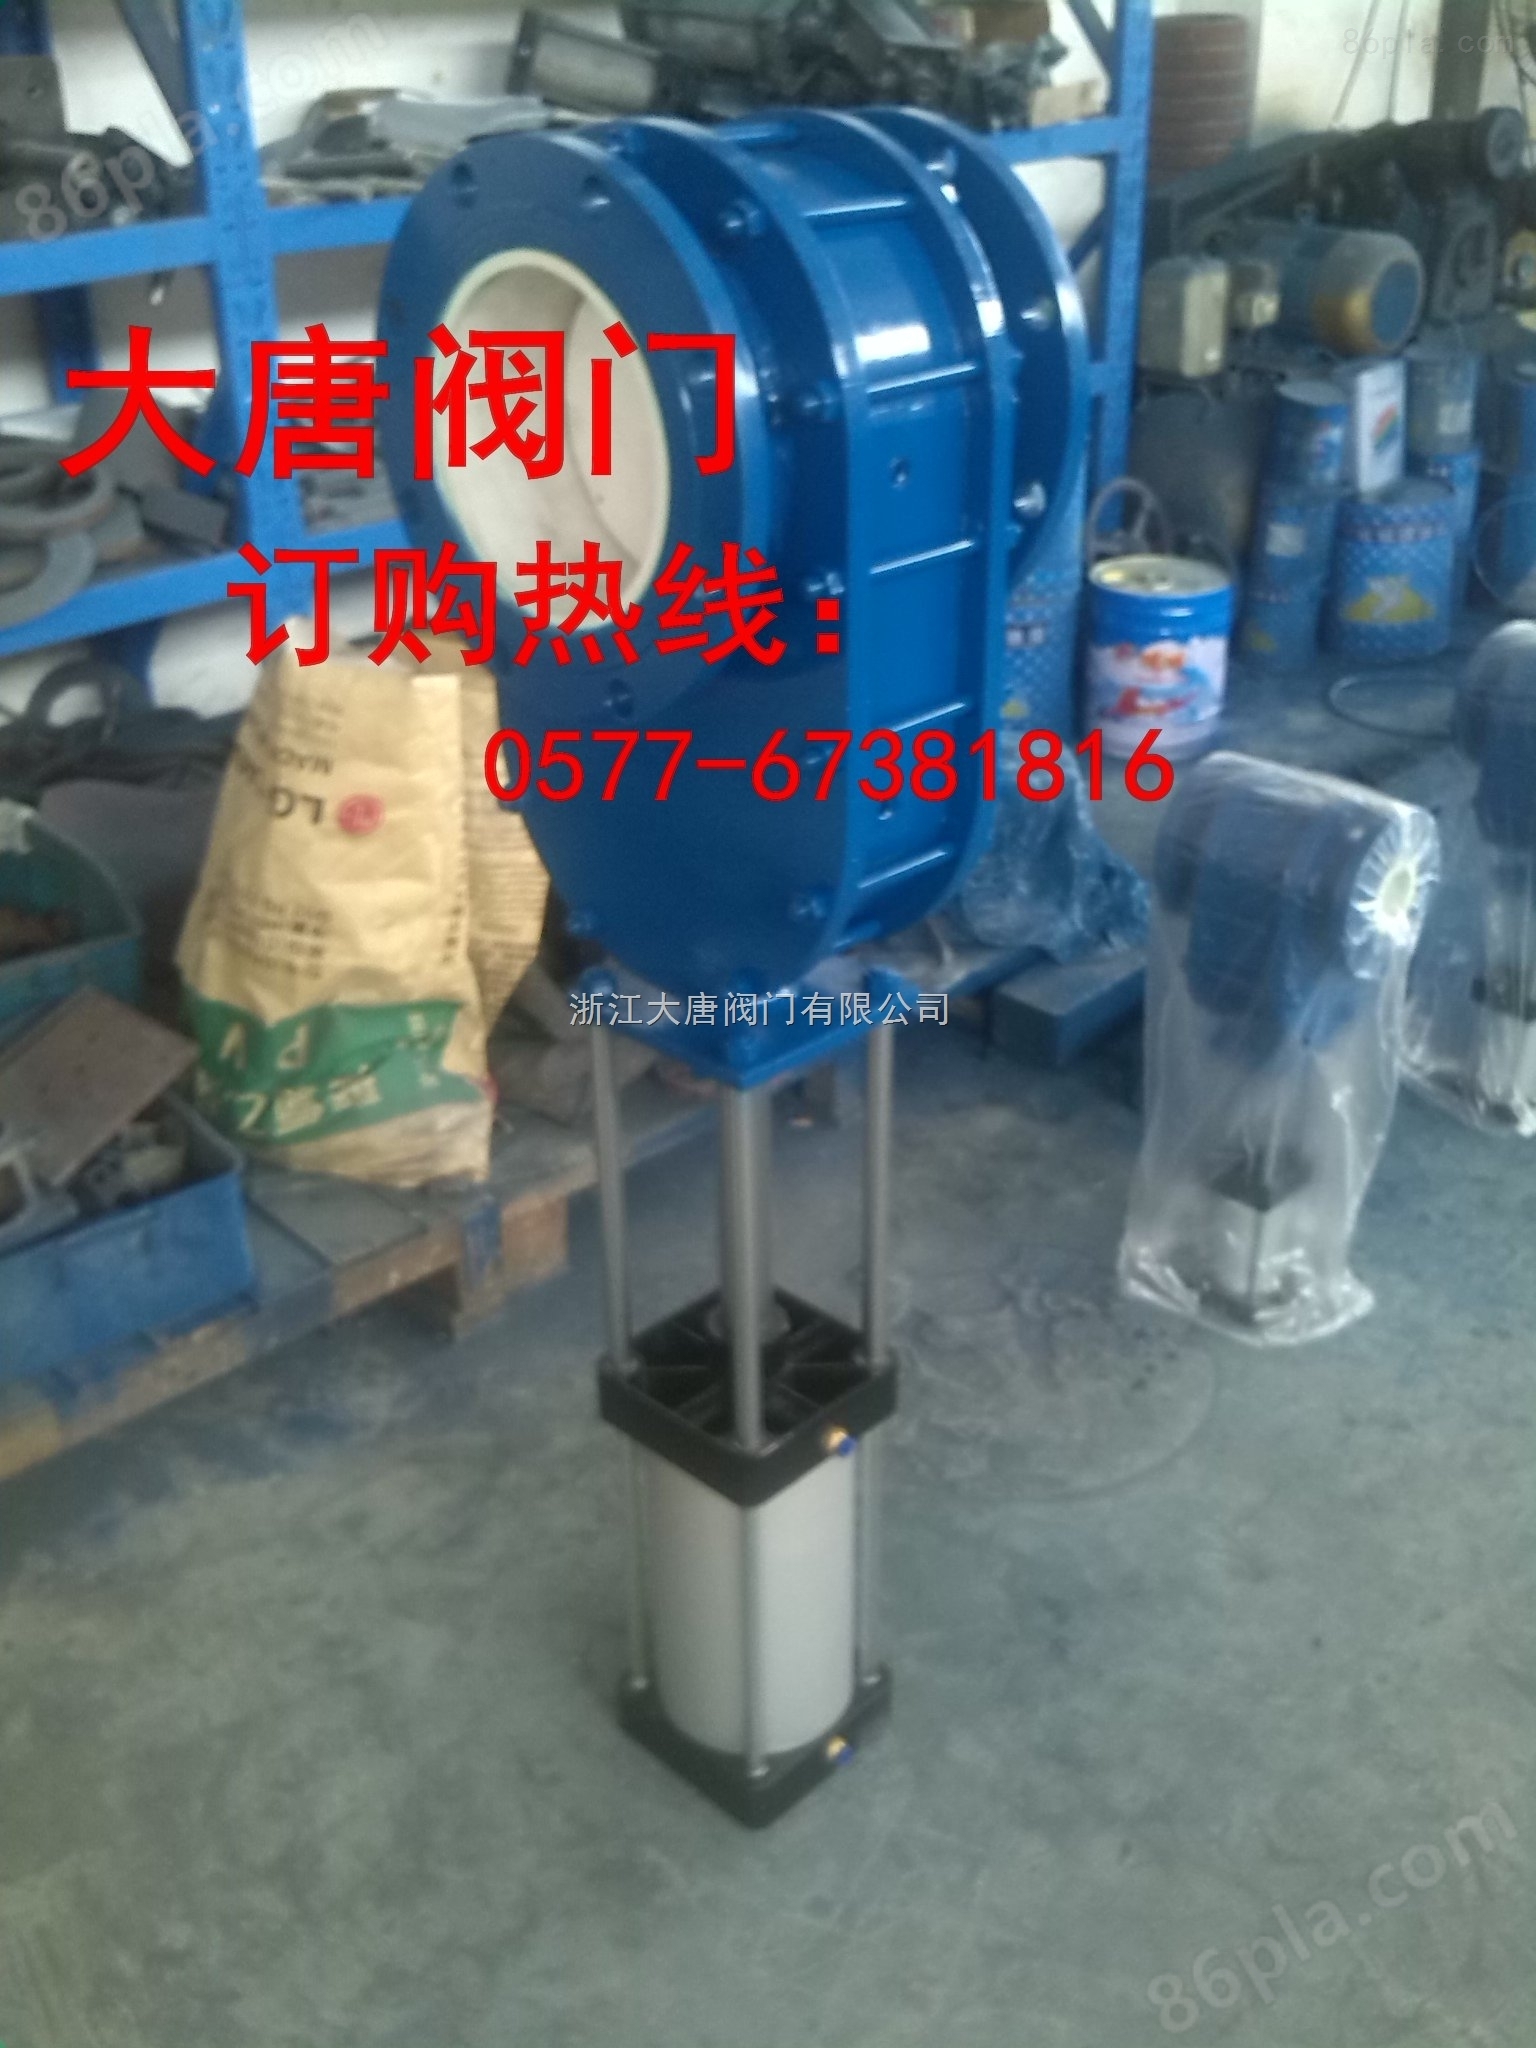 气动陶瓷双闸板放料阀-专业生产0577-67381816